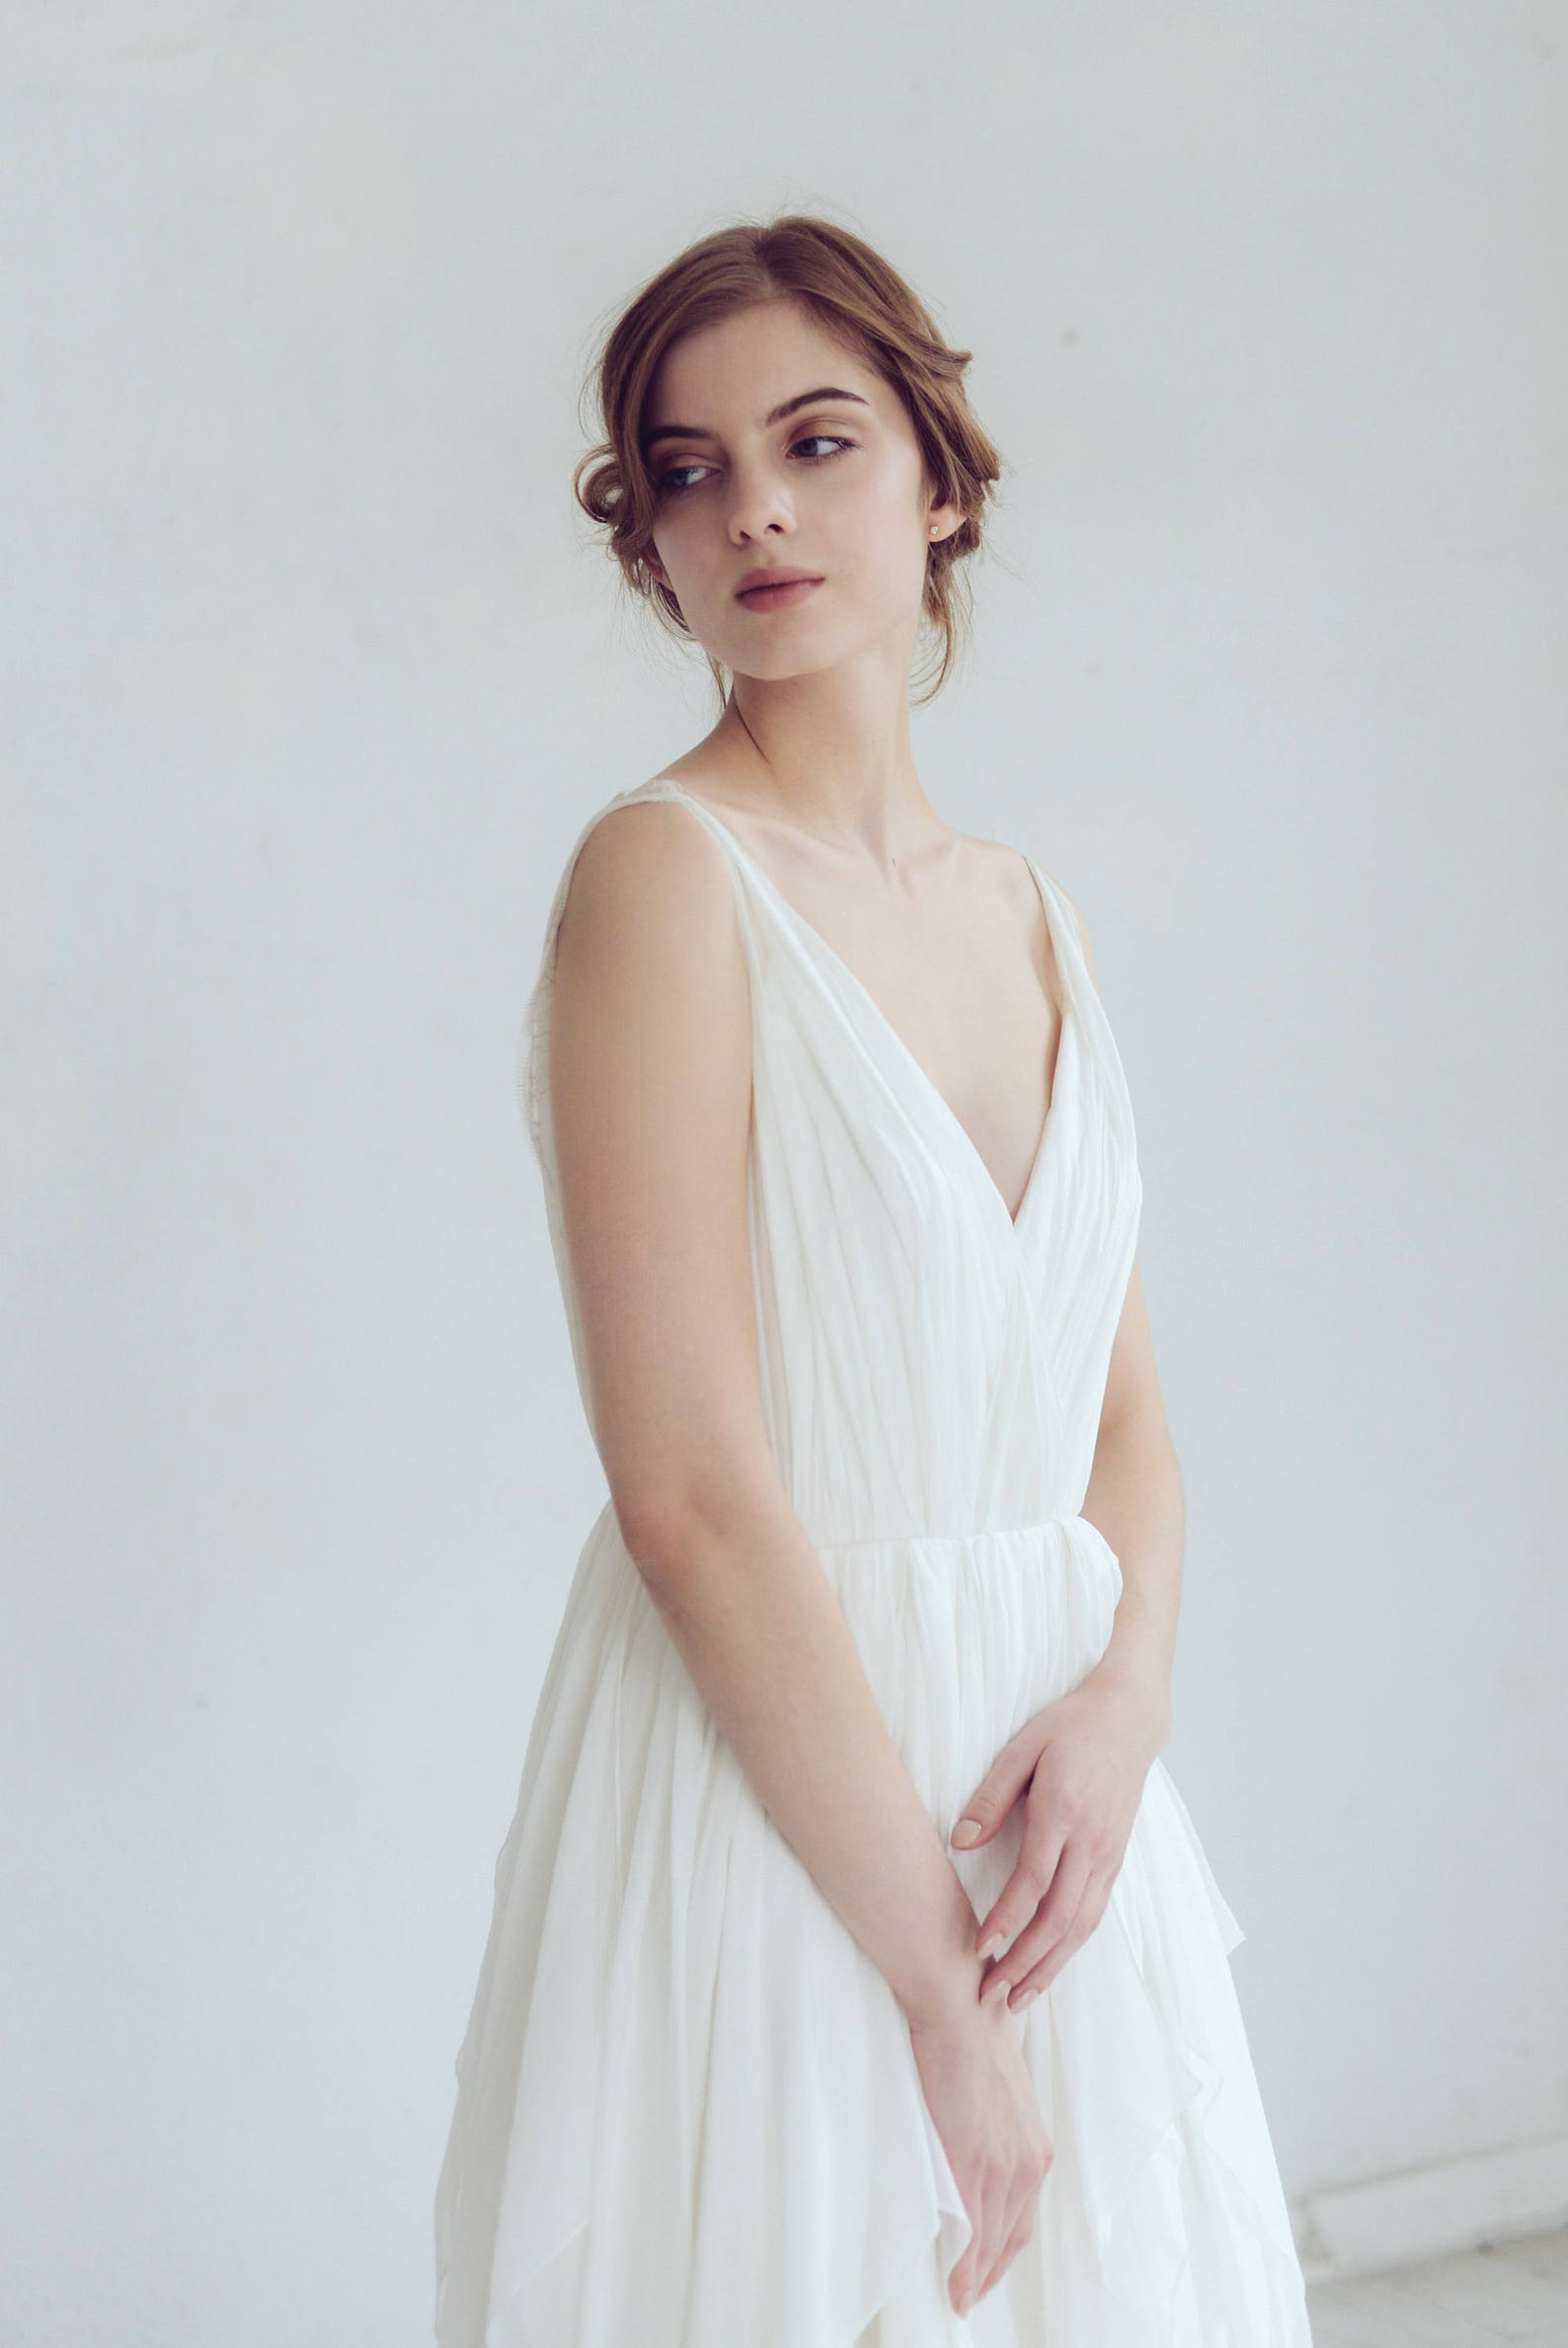 Silk wedding dress // Amalthea / Lace wedding gown summer | Etsy